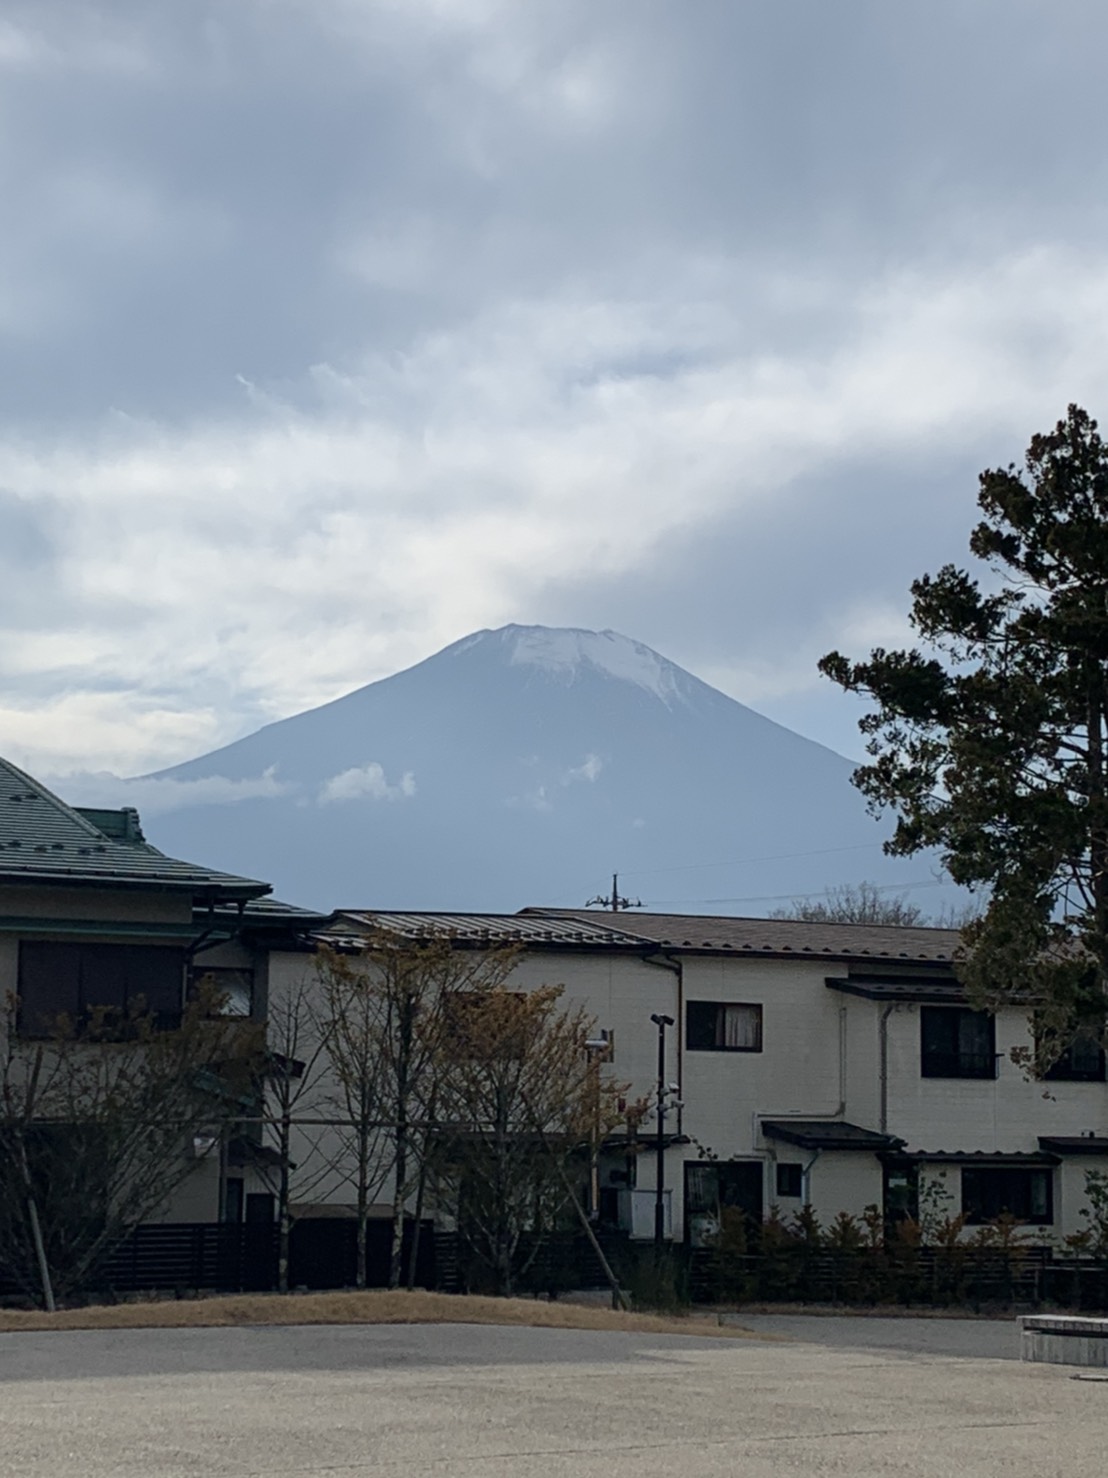 今回は山梨県山名湖に　民宿外壁内装工事の打ち合わせ‼️現場から見える富士山〜🏔‼️大阪から車で6時間かなり遠かったです‼️笑笑　現場からの富士山🏔凄く綺麗でした‼️2